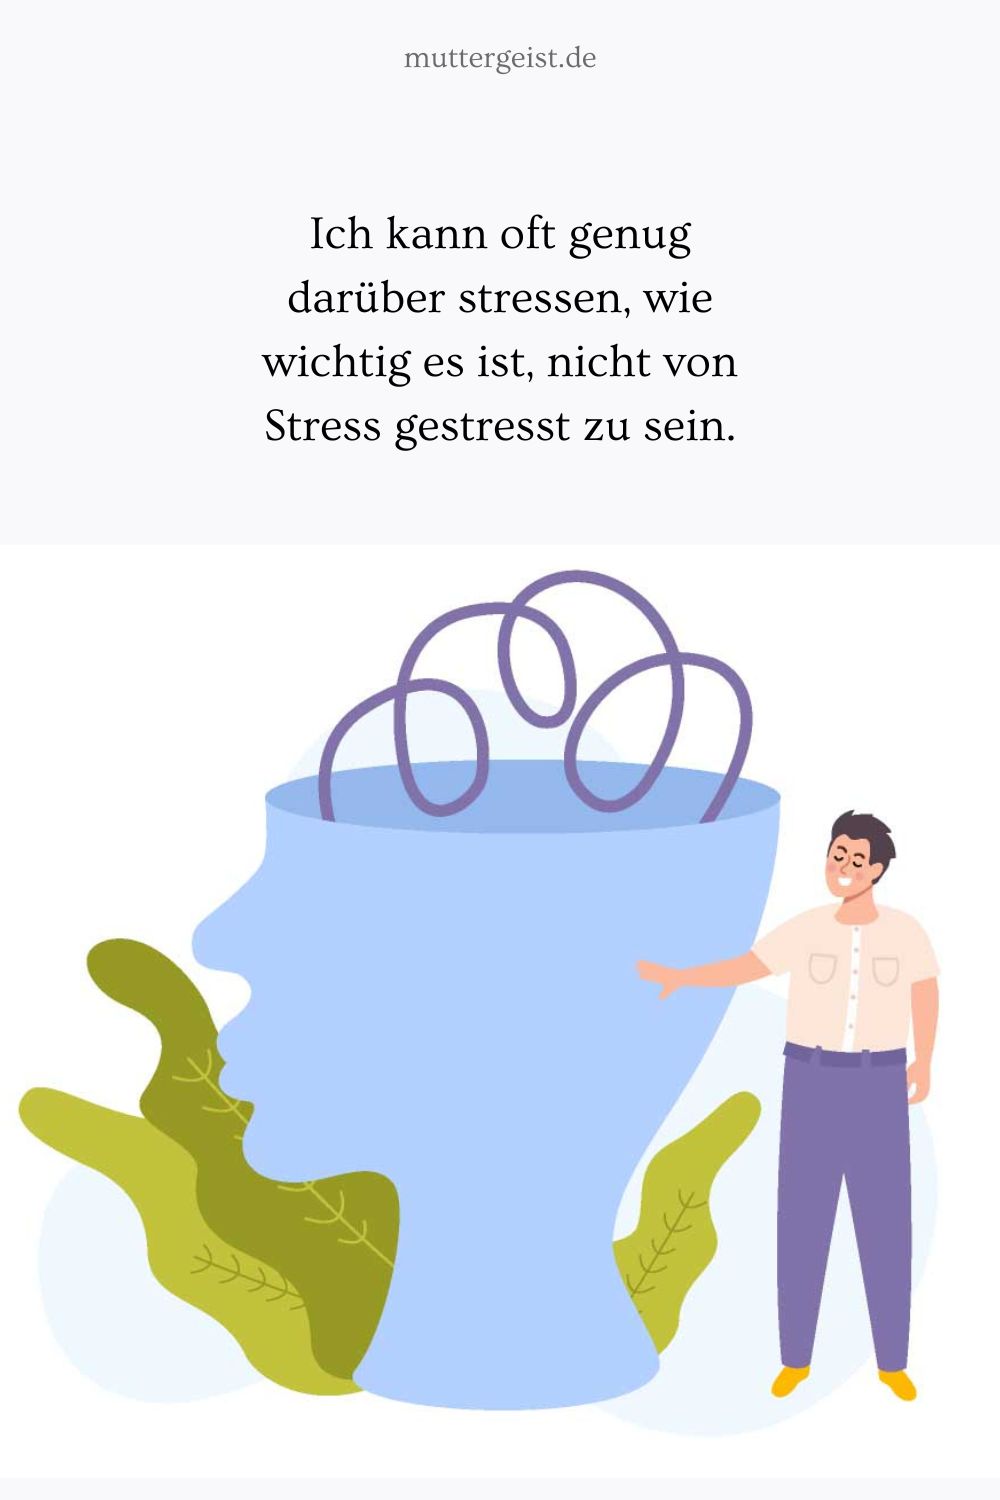 Ich kann oft genug darüber stressen, wie wichtig es ist, nicht von Stress gestresst zu sein